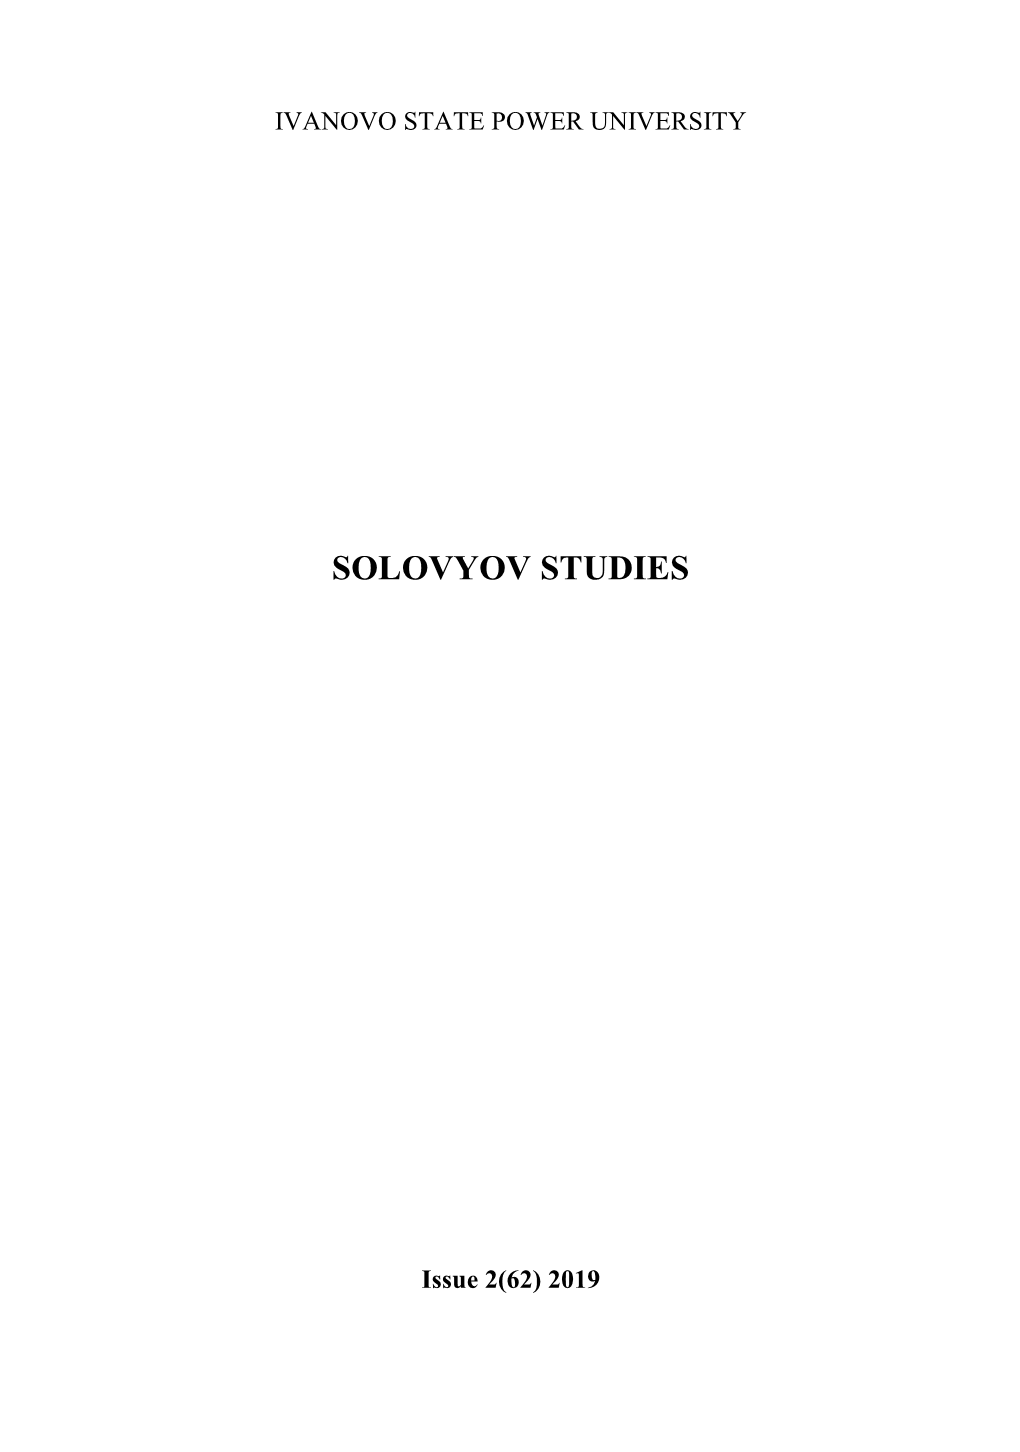 Solovyov Studies